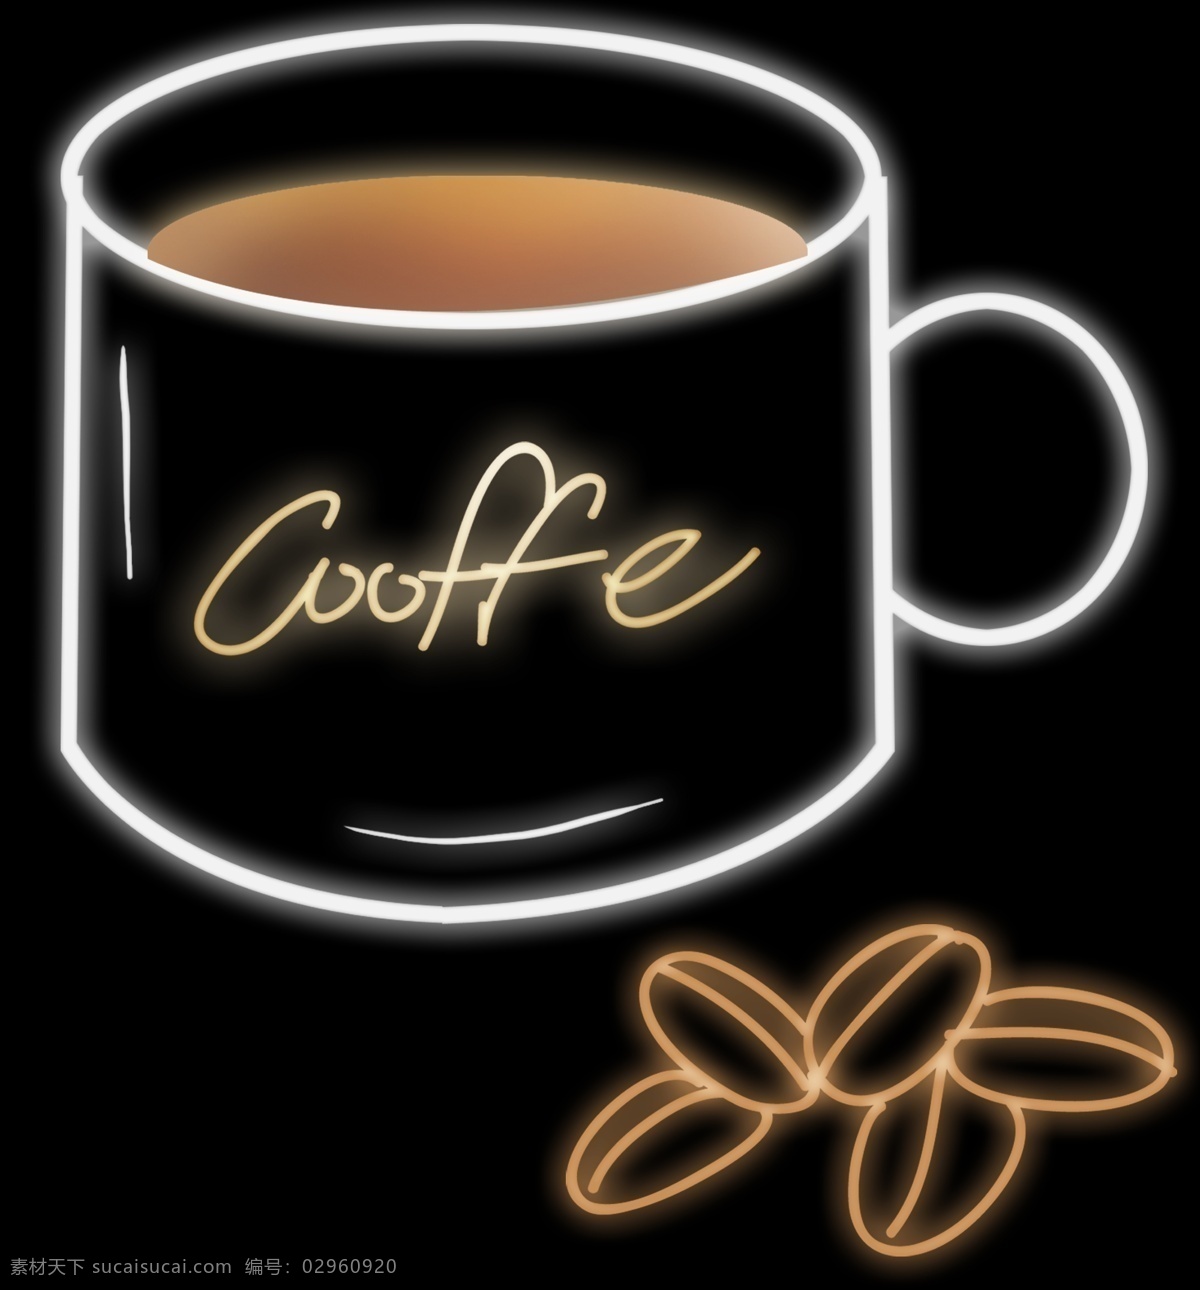 灯管 光 感 咖啡杯 咖啡豆 咖啡 夏季饮品 咖啡店 现磨咖啡 茶饮 光感饮品 发光咖啡 发光 灯管饮品 果汁